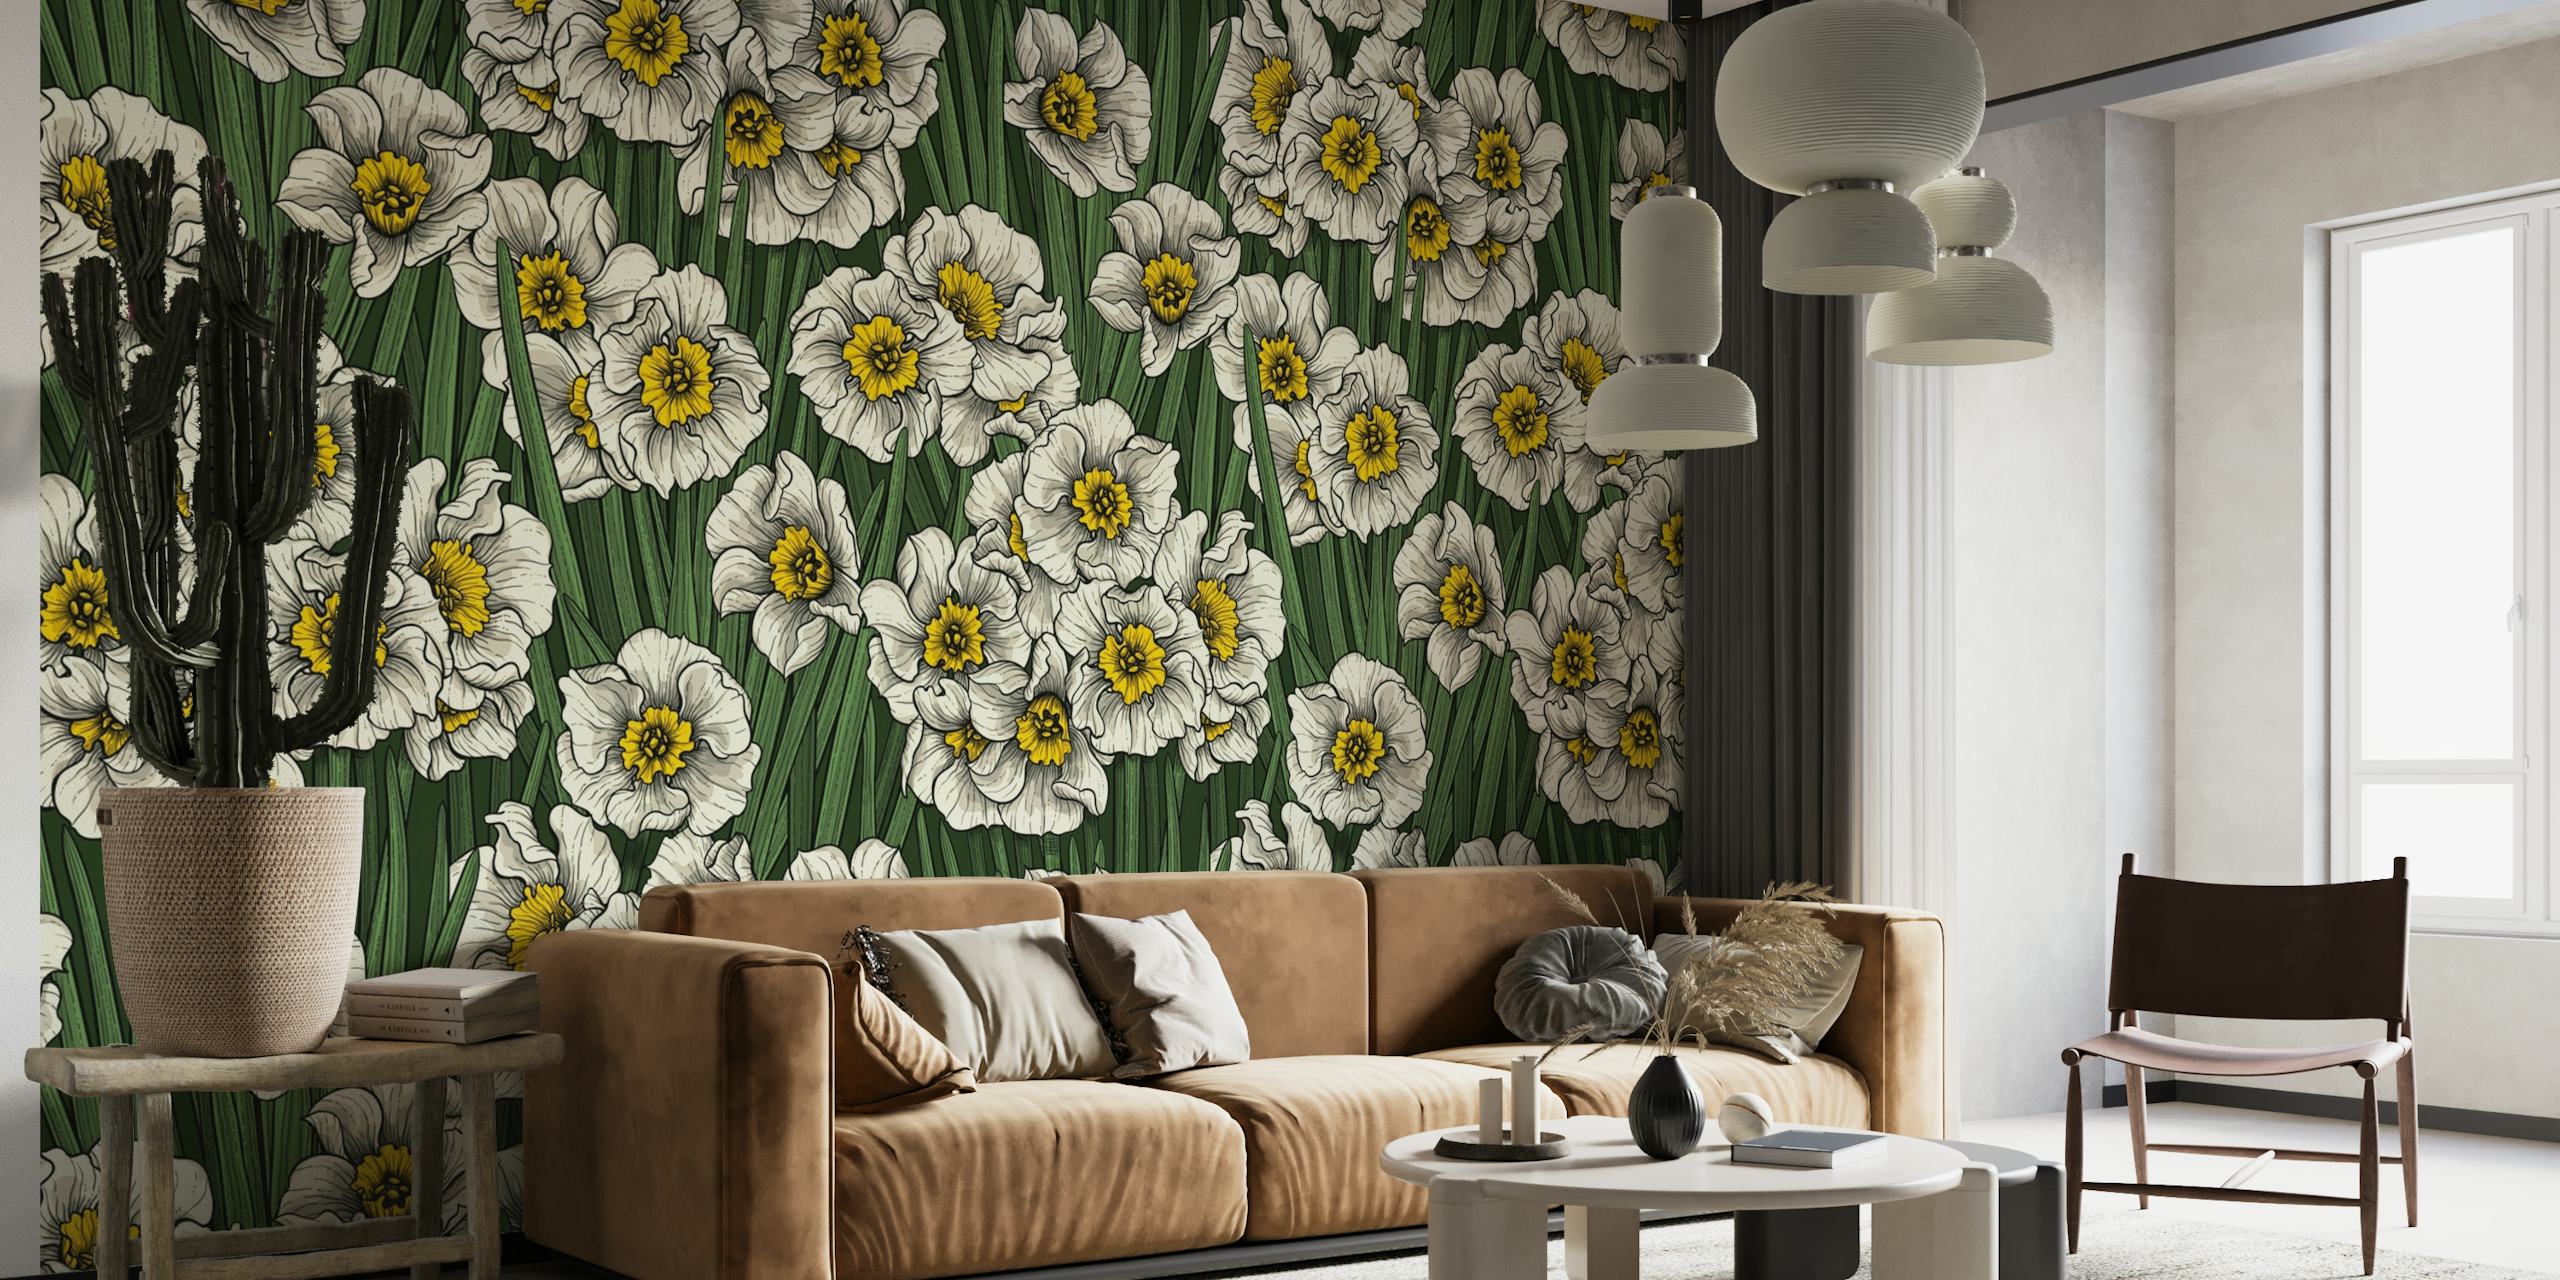 Daffodils wallpaper